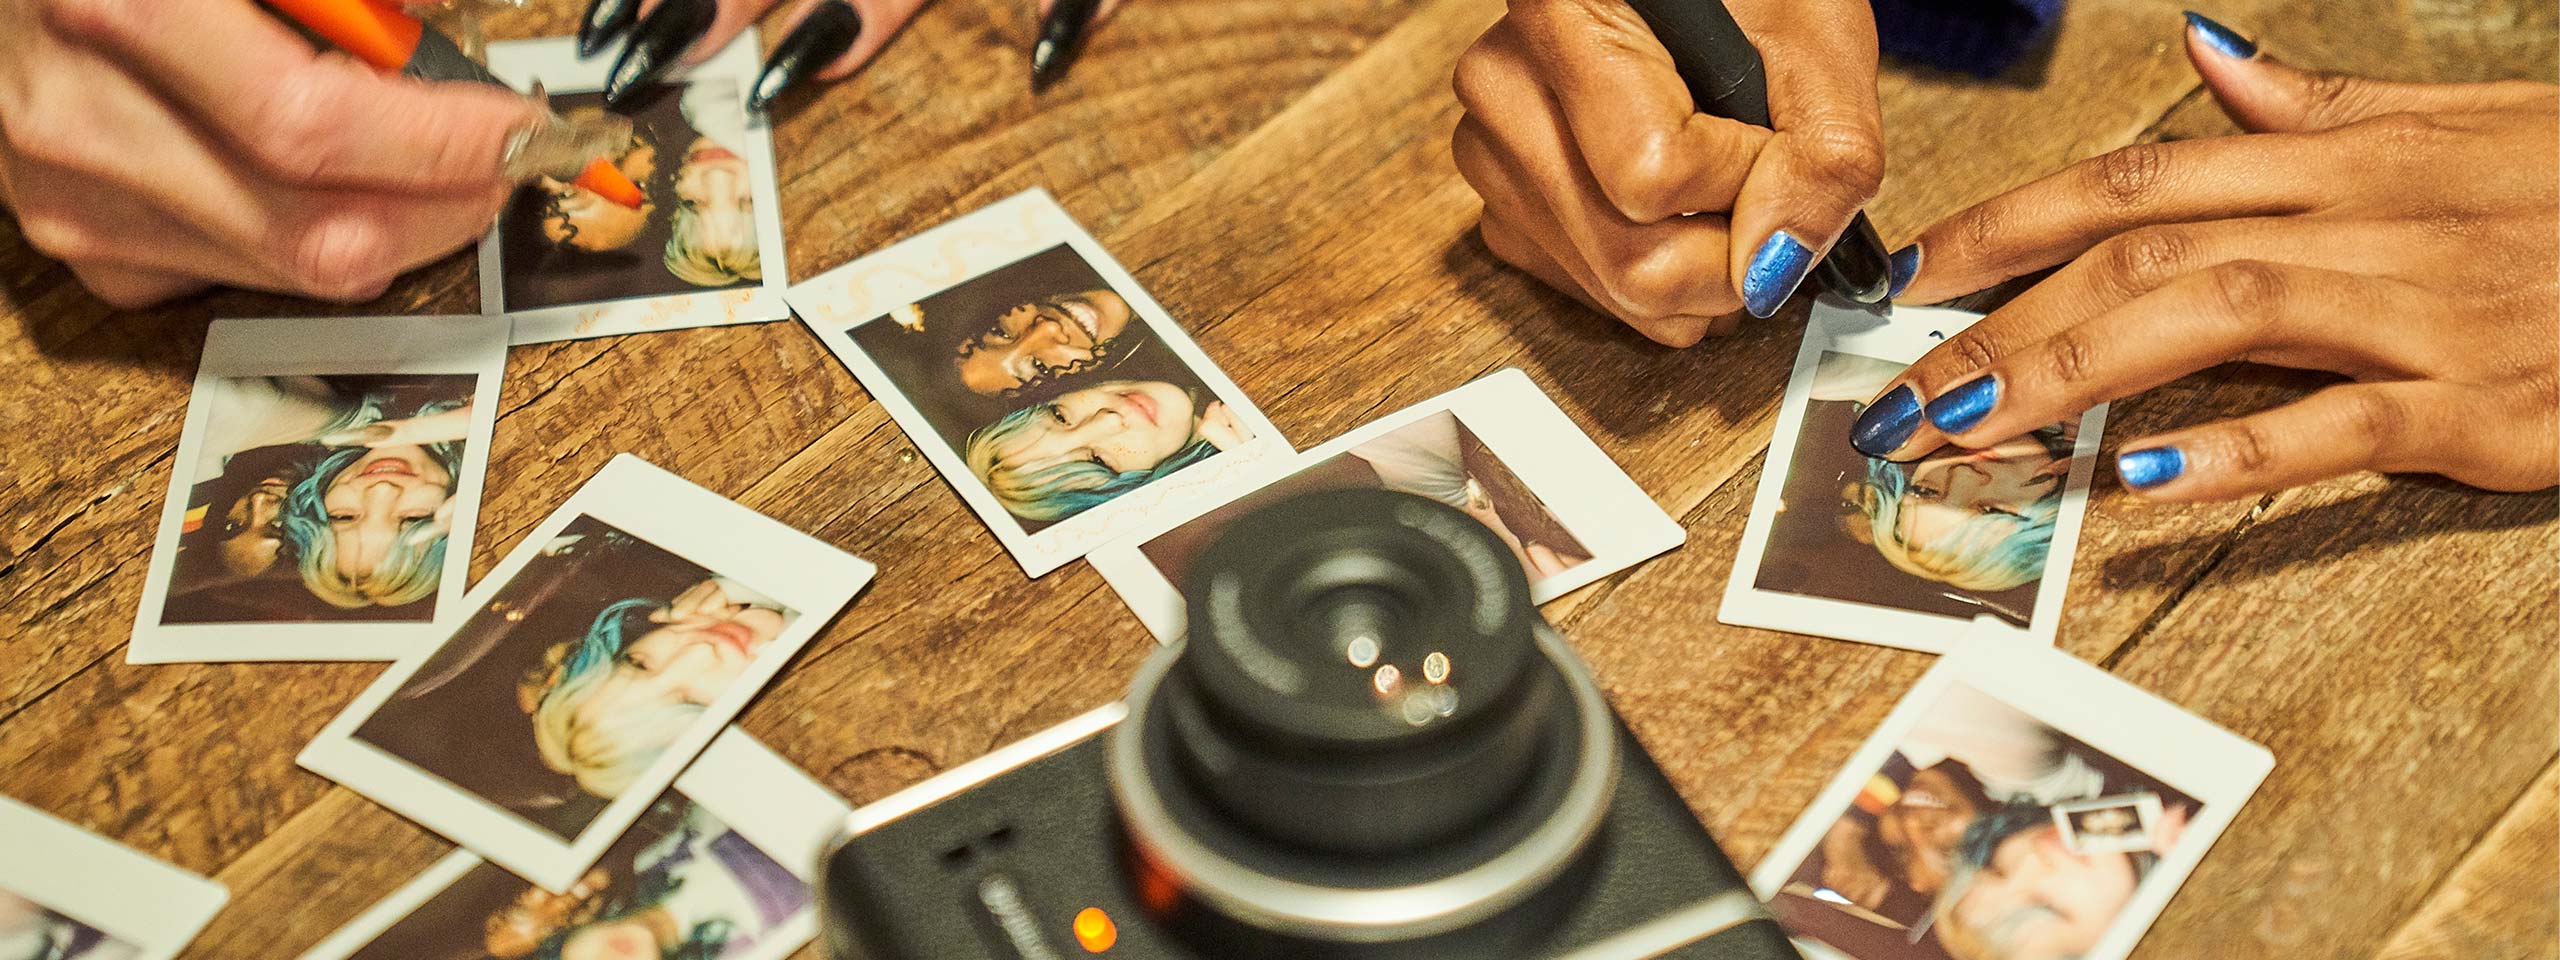 Instax wide kamera i selfieläge på bordet med instax filmfot